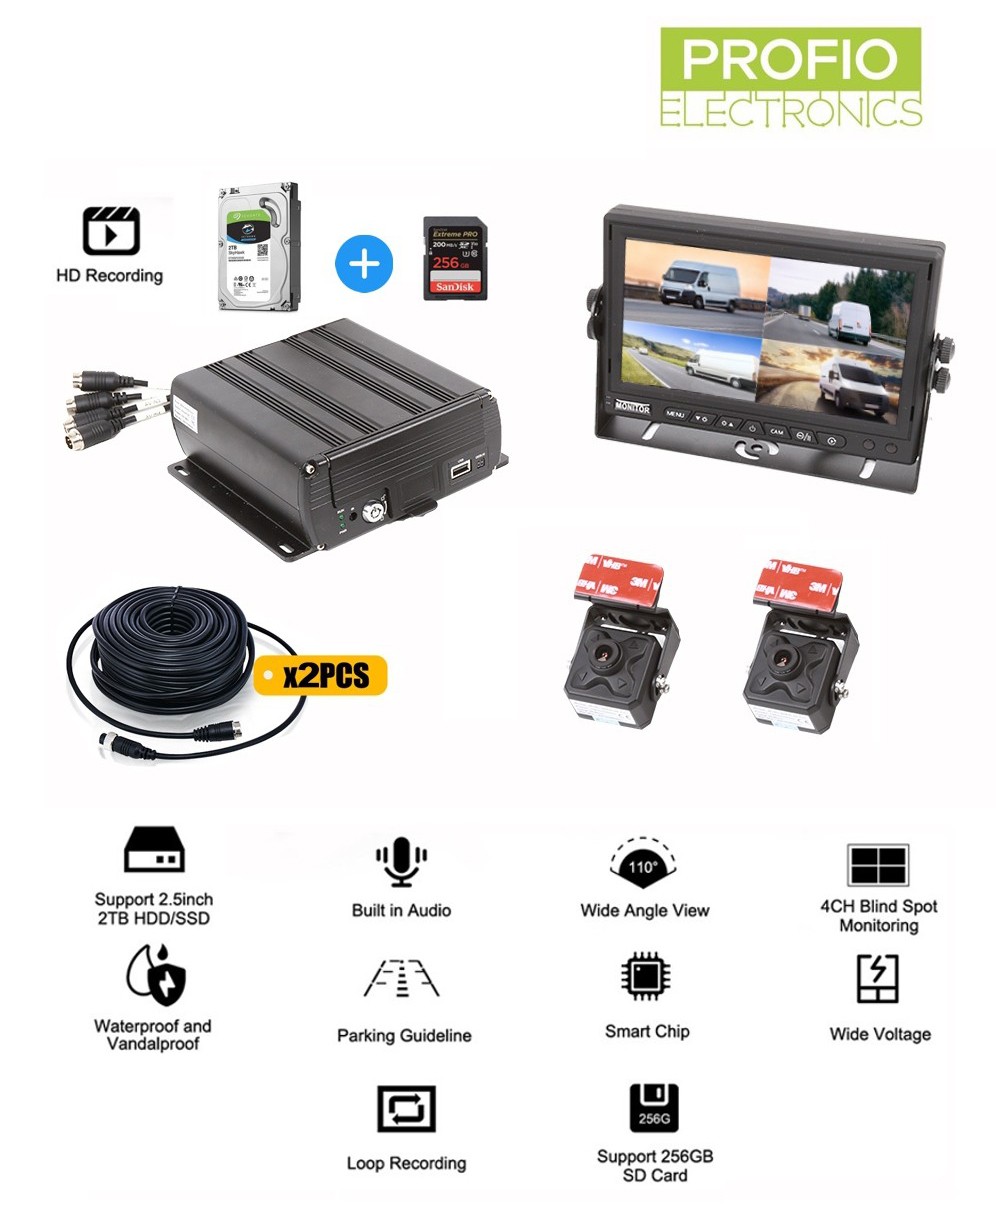 Hdd sabit diske kayıt yapabilen 4 kanallı dvr araç kamera sistemi